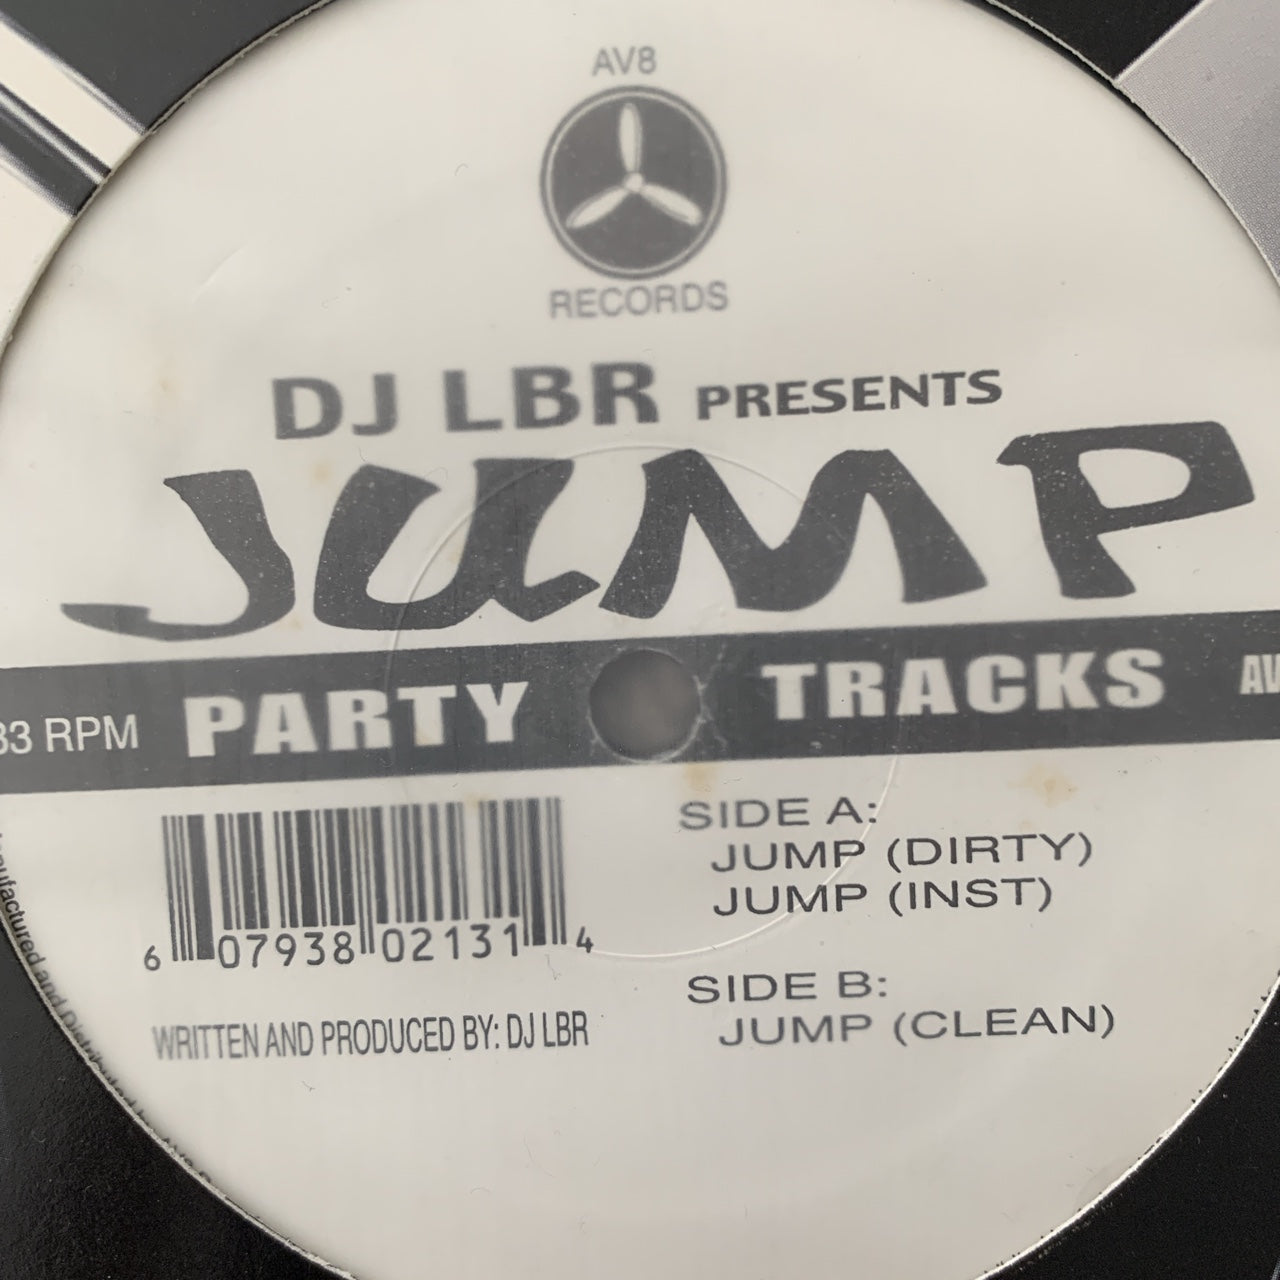 DJ LBR presents Jump Hip Hop Party Tracks